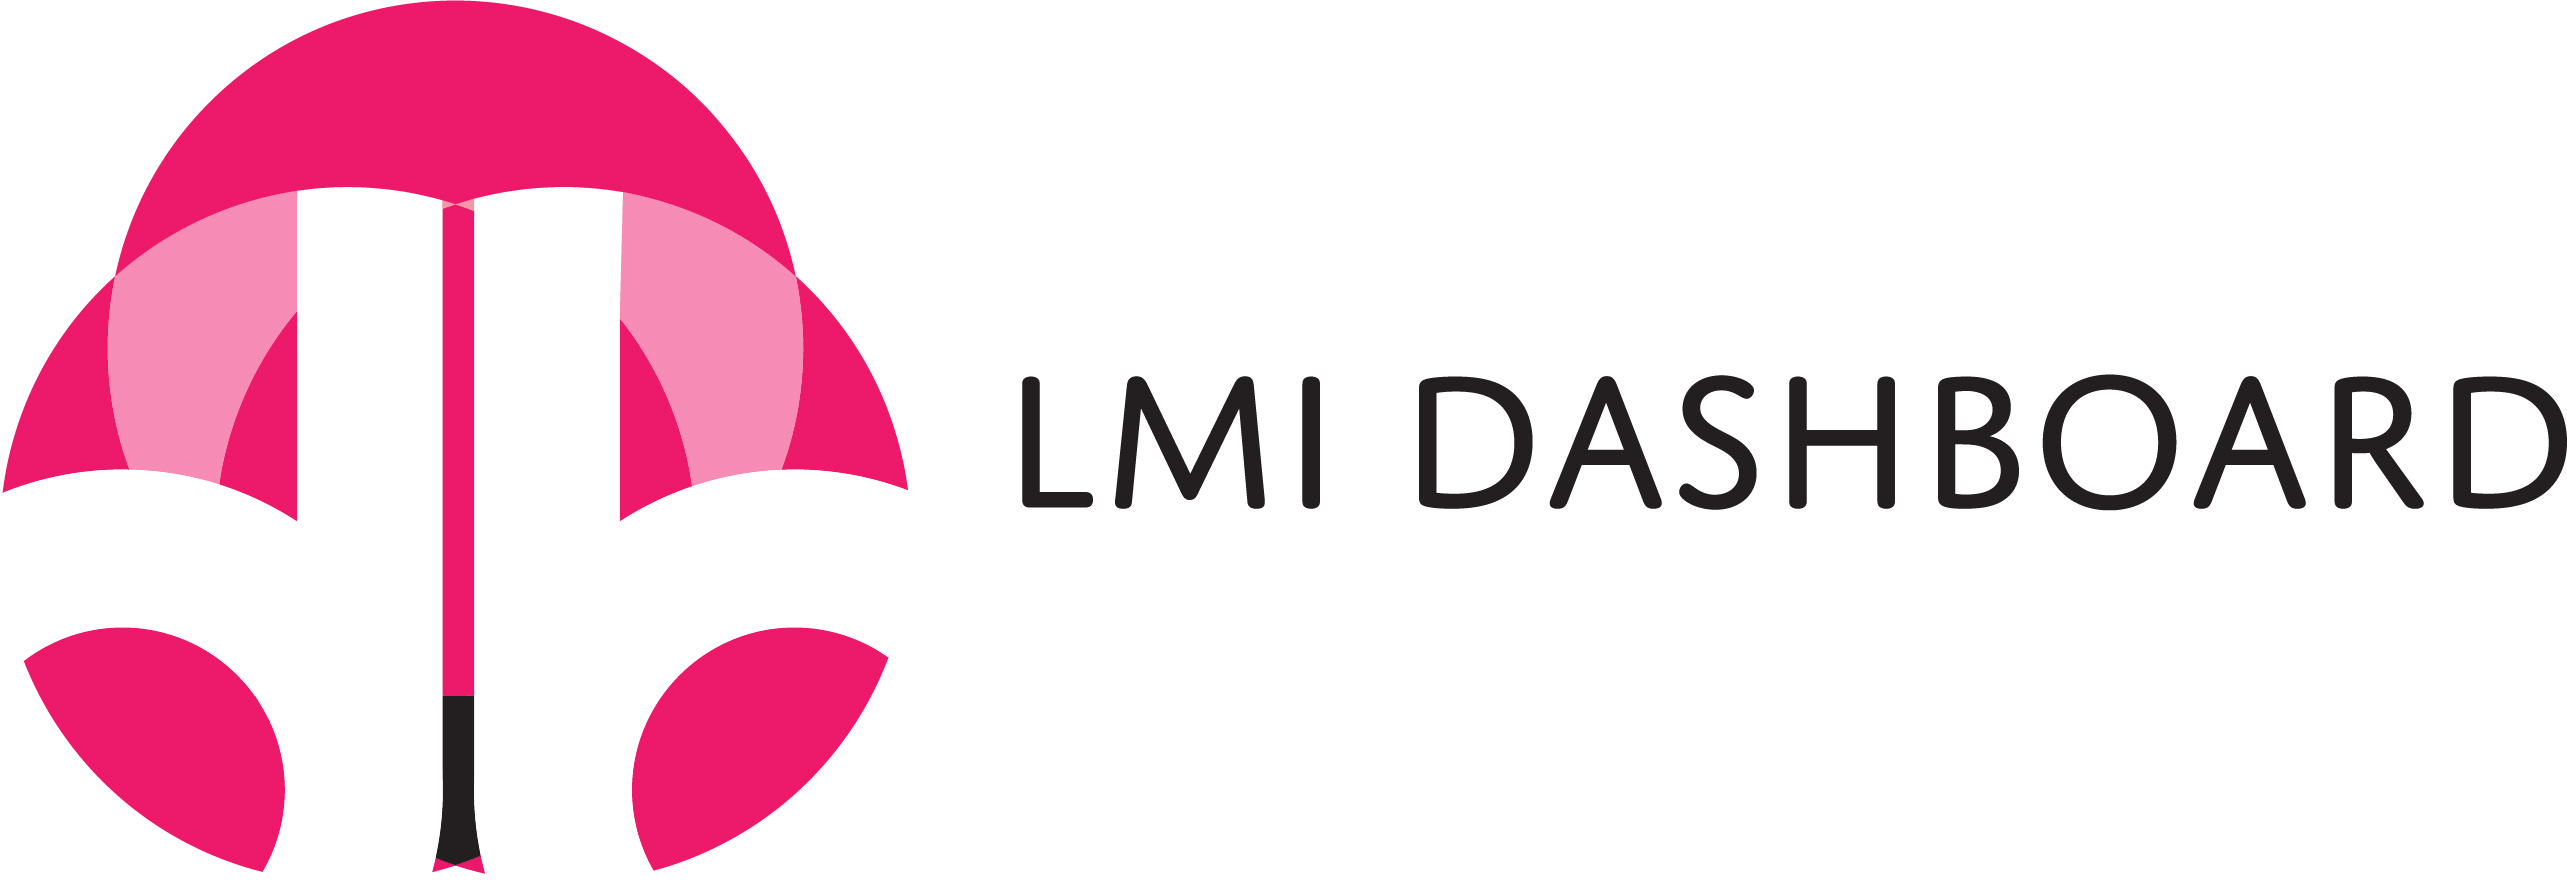 LMI Dashboard